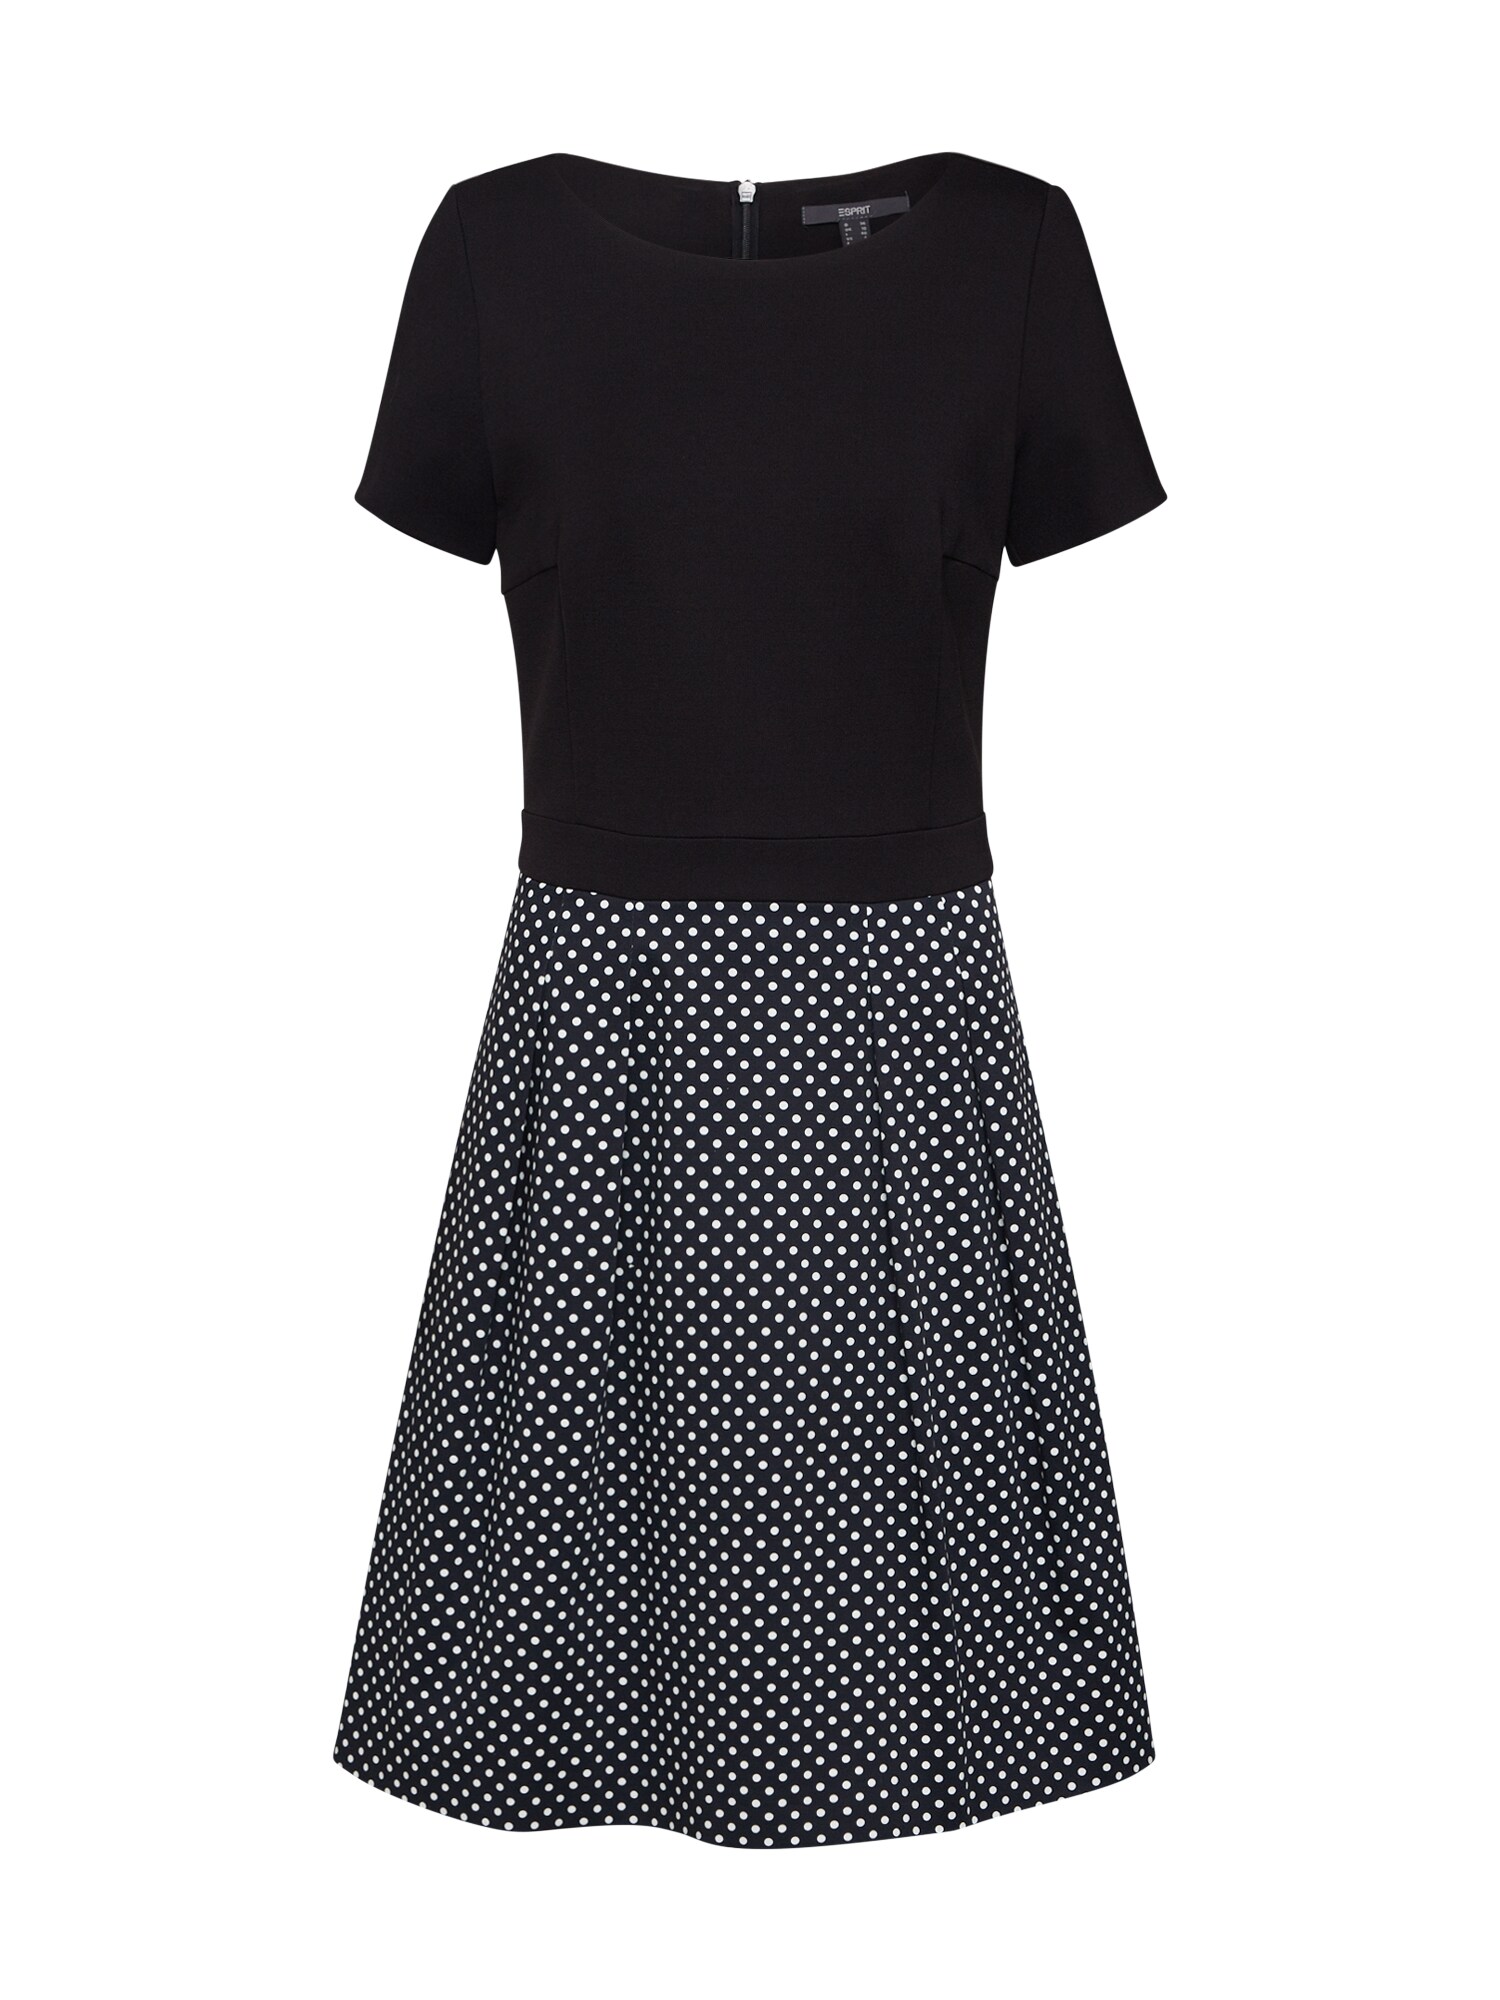 Esprit Collection Suknelė  mišrios spalvos / juoda